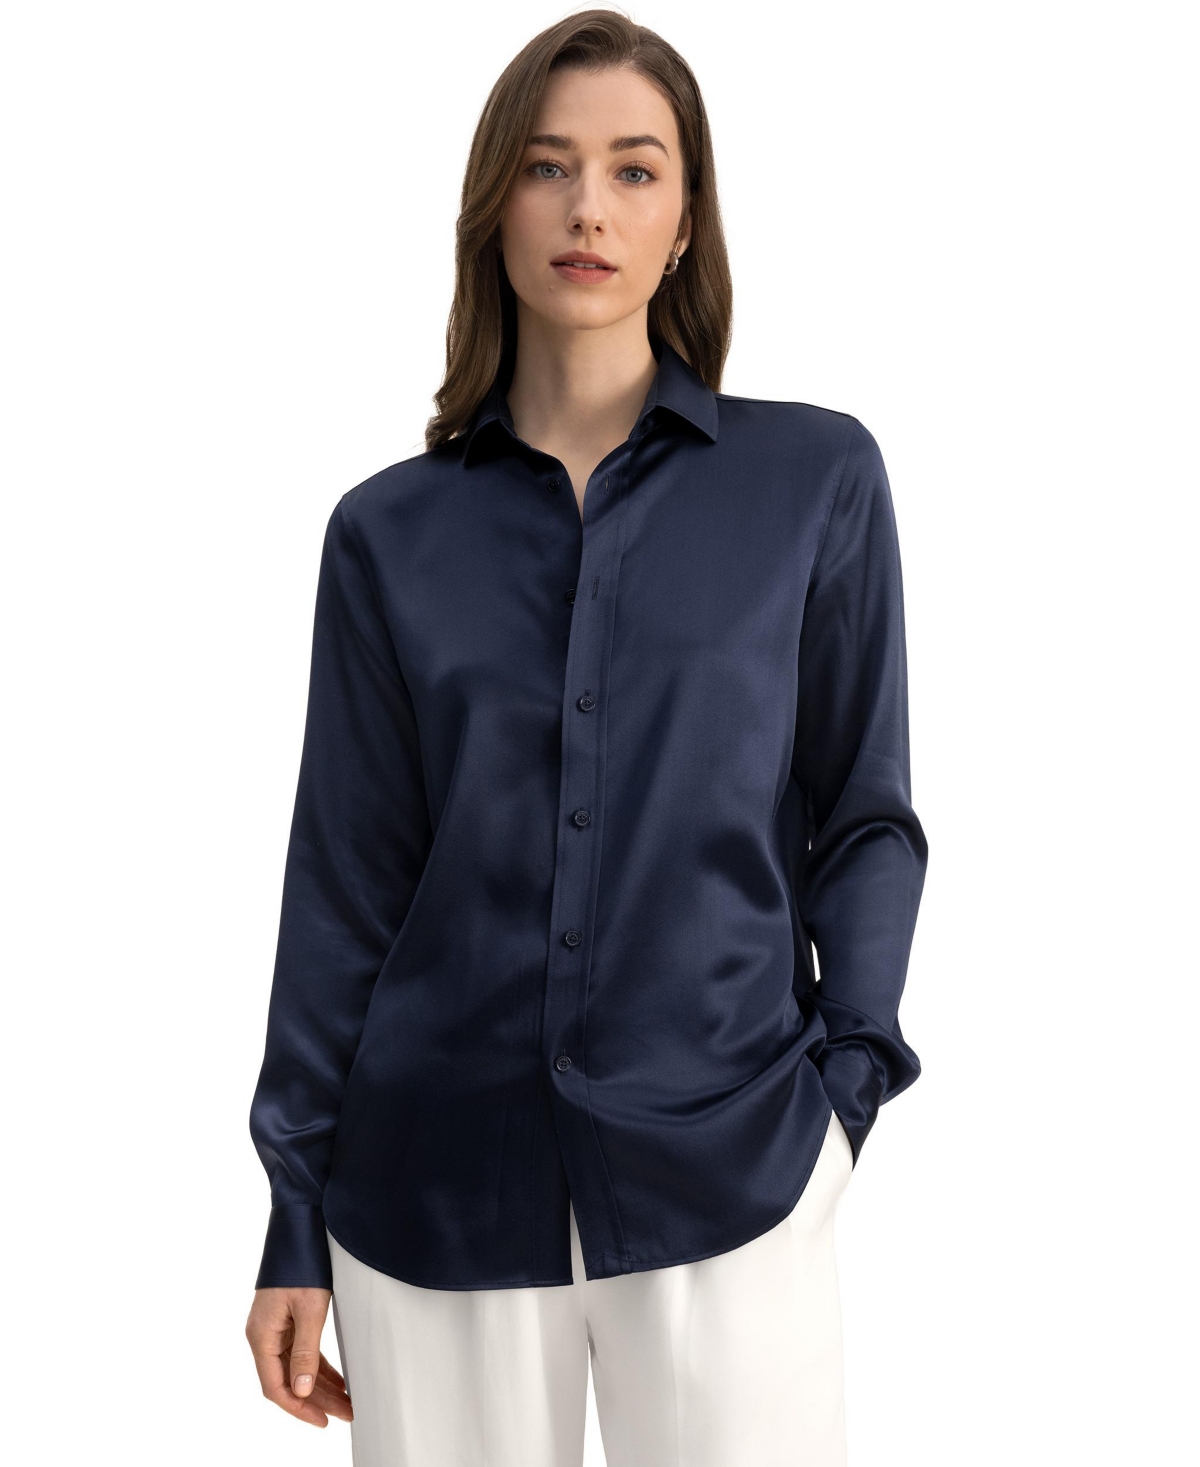 Tailored Button Down Silk Shirt for Women - Navy blue